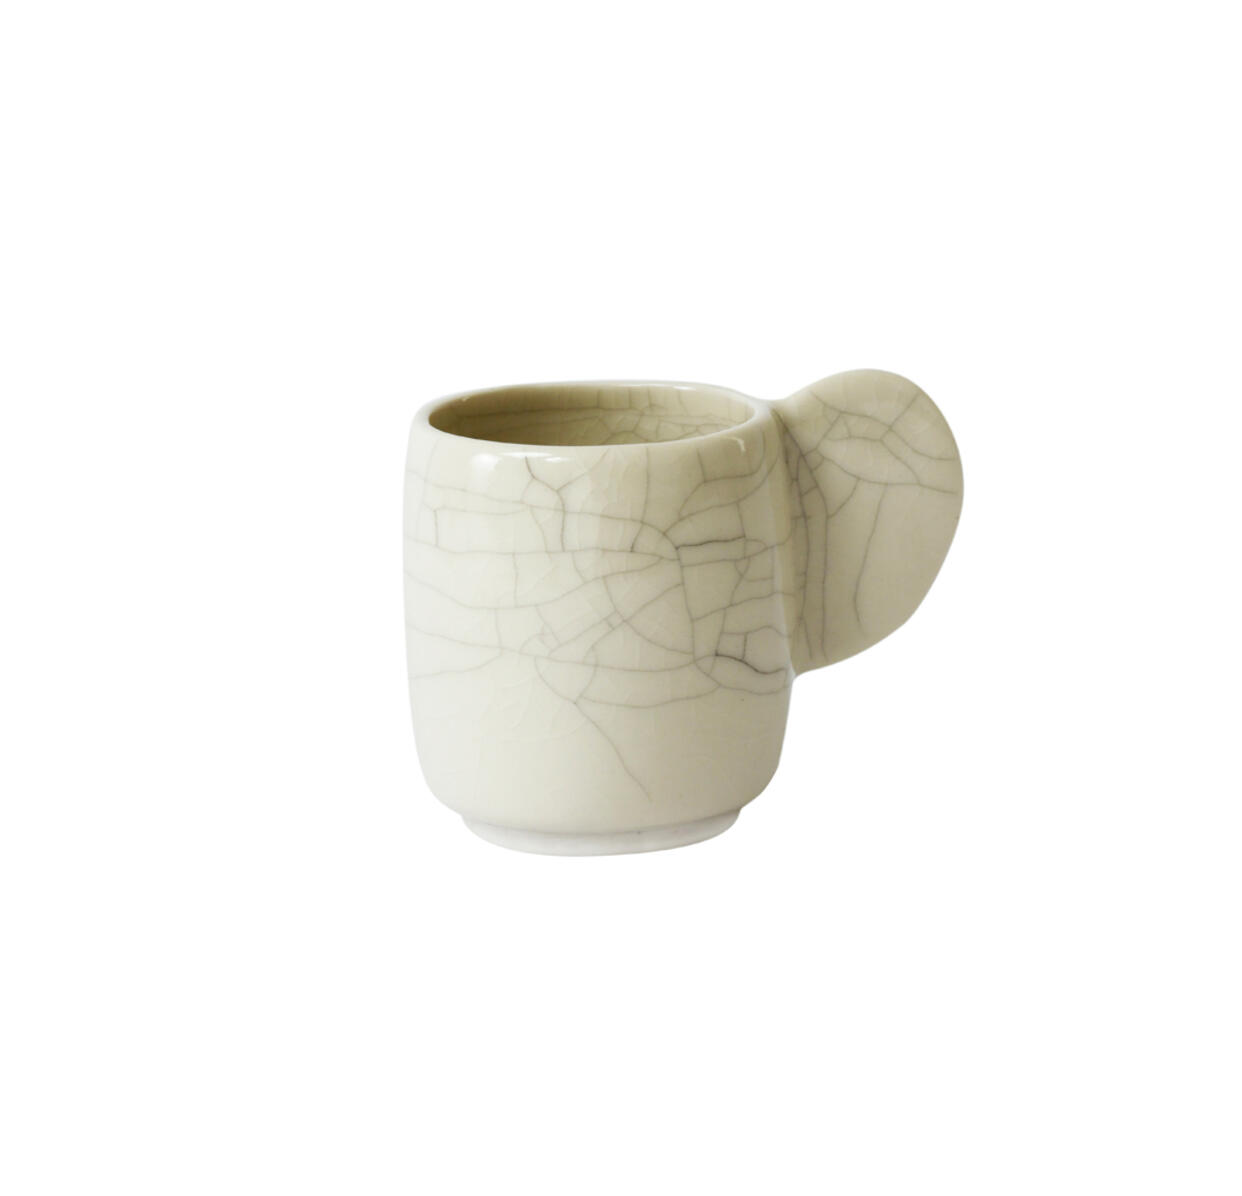 cup m dashi quartz craquelé ceramic manufacturer